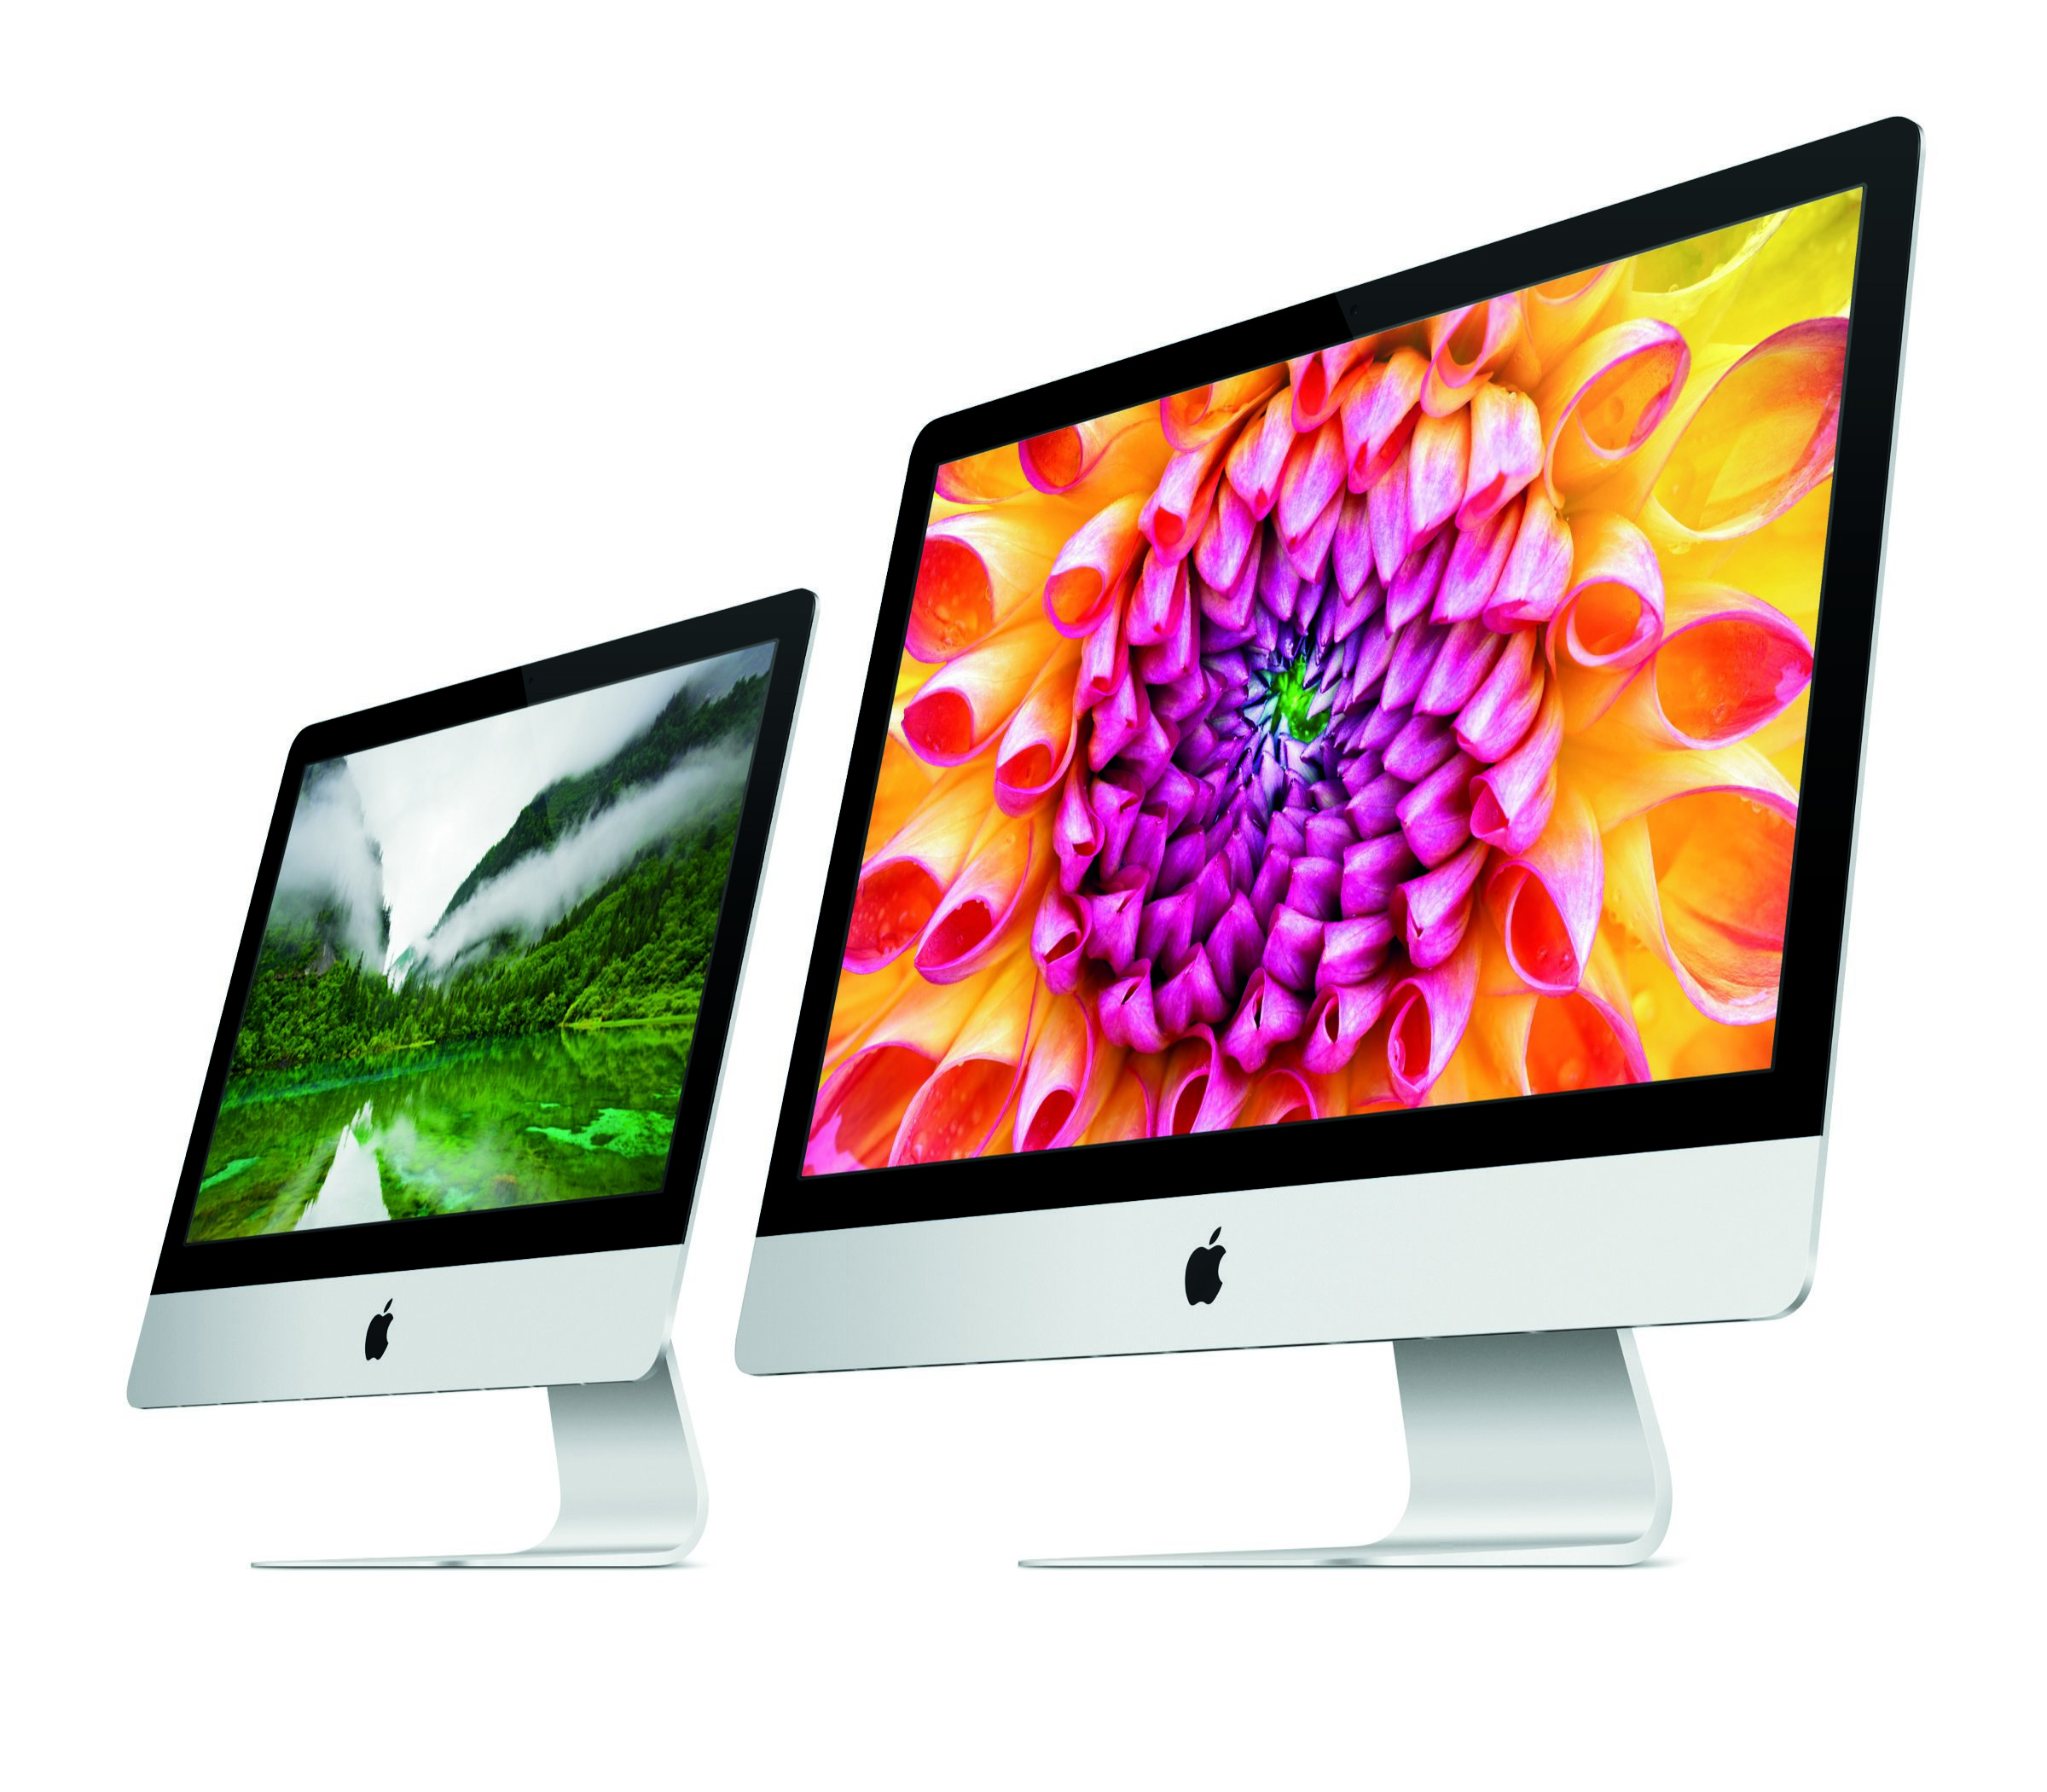 iMac линията включва общо 4 модела - два с 21,5-инчов екран и два с 27-инчов екран